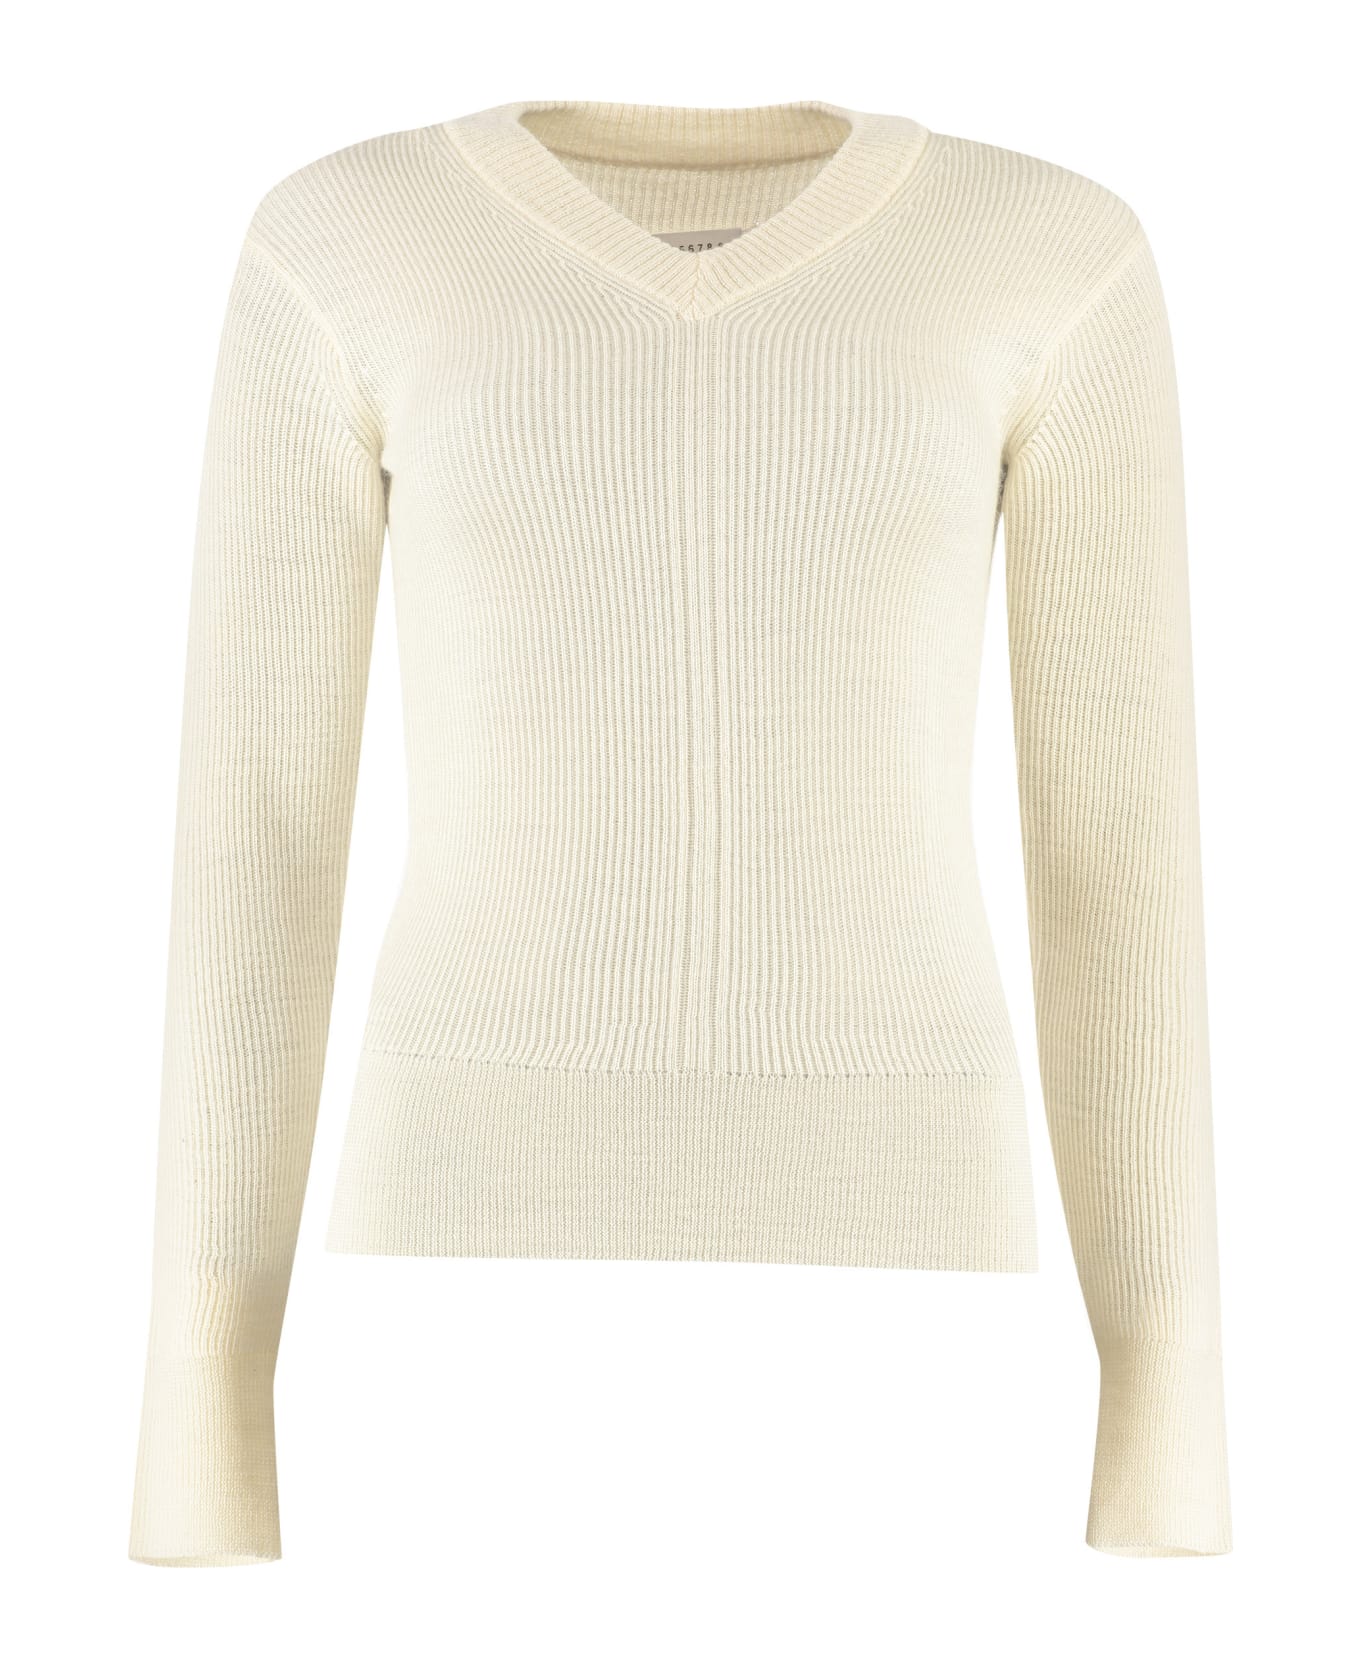 Maison Margiela Ribbed Sweater - White